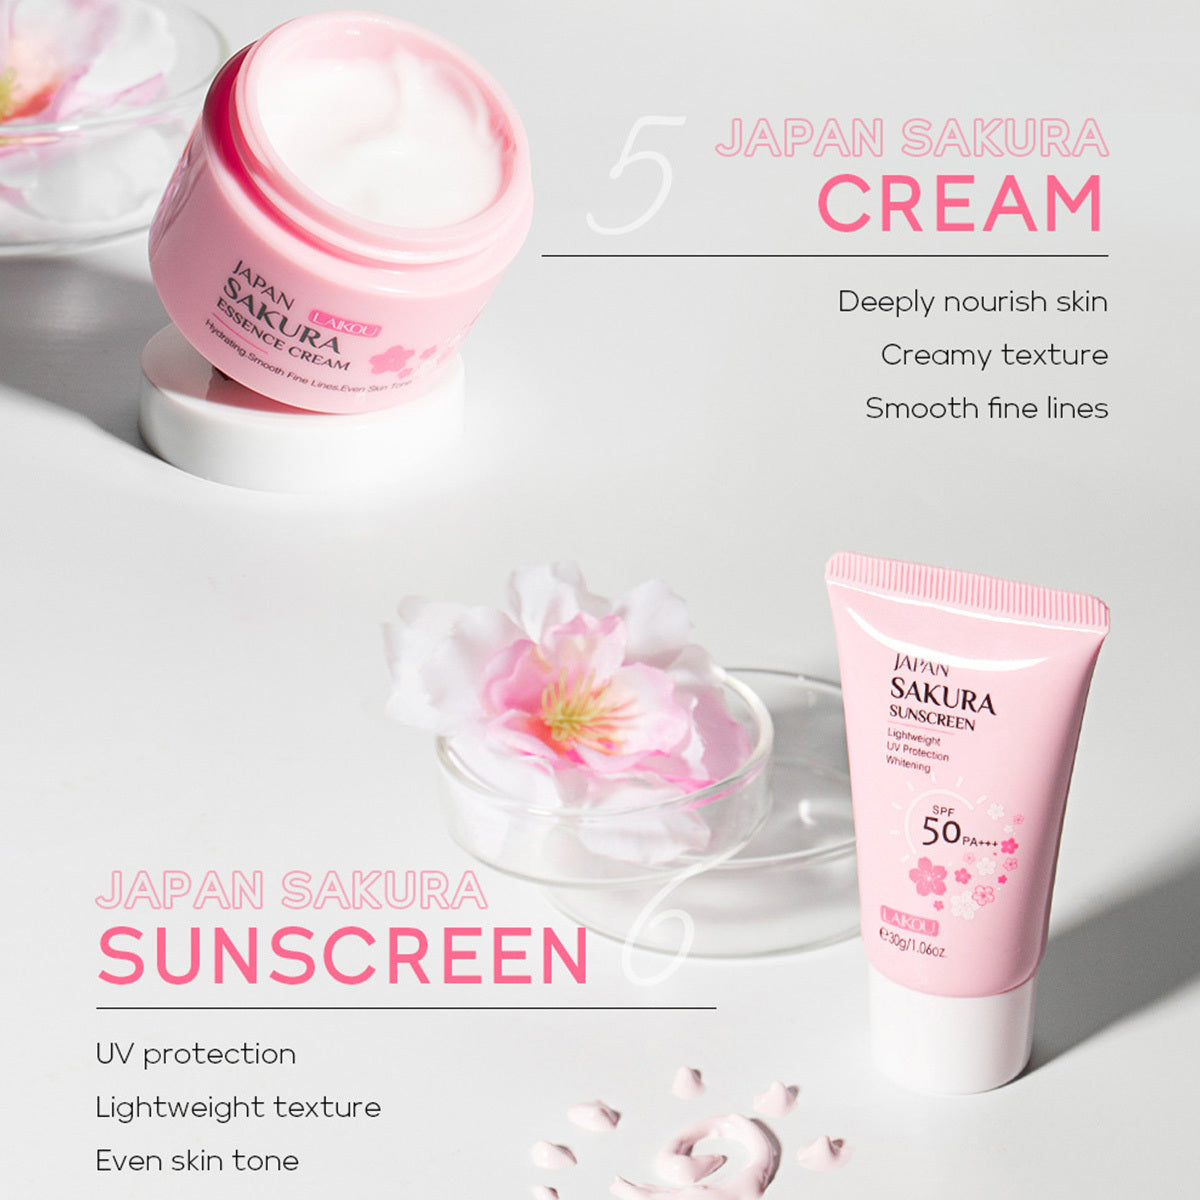 Skin Care Set JAPAN SAKURA Women Beauty Gift Sets Skin Care Kit With Cleanser, Toner, Lotion, Serum, Eye Cream, Face Cream Travel Kit For Women Teen Girls Mom Daughter TSA-friendly Sizes 6pcs